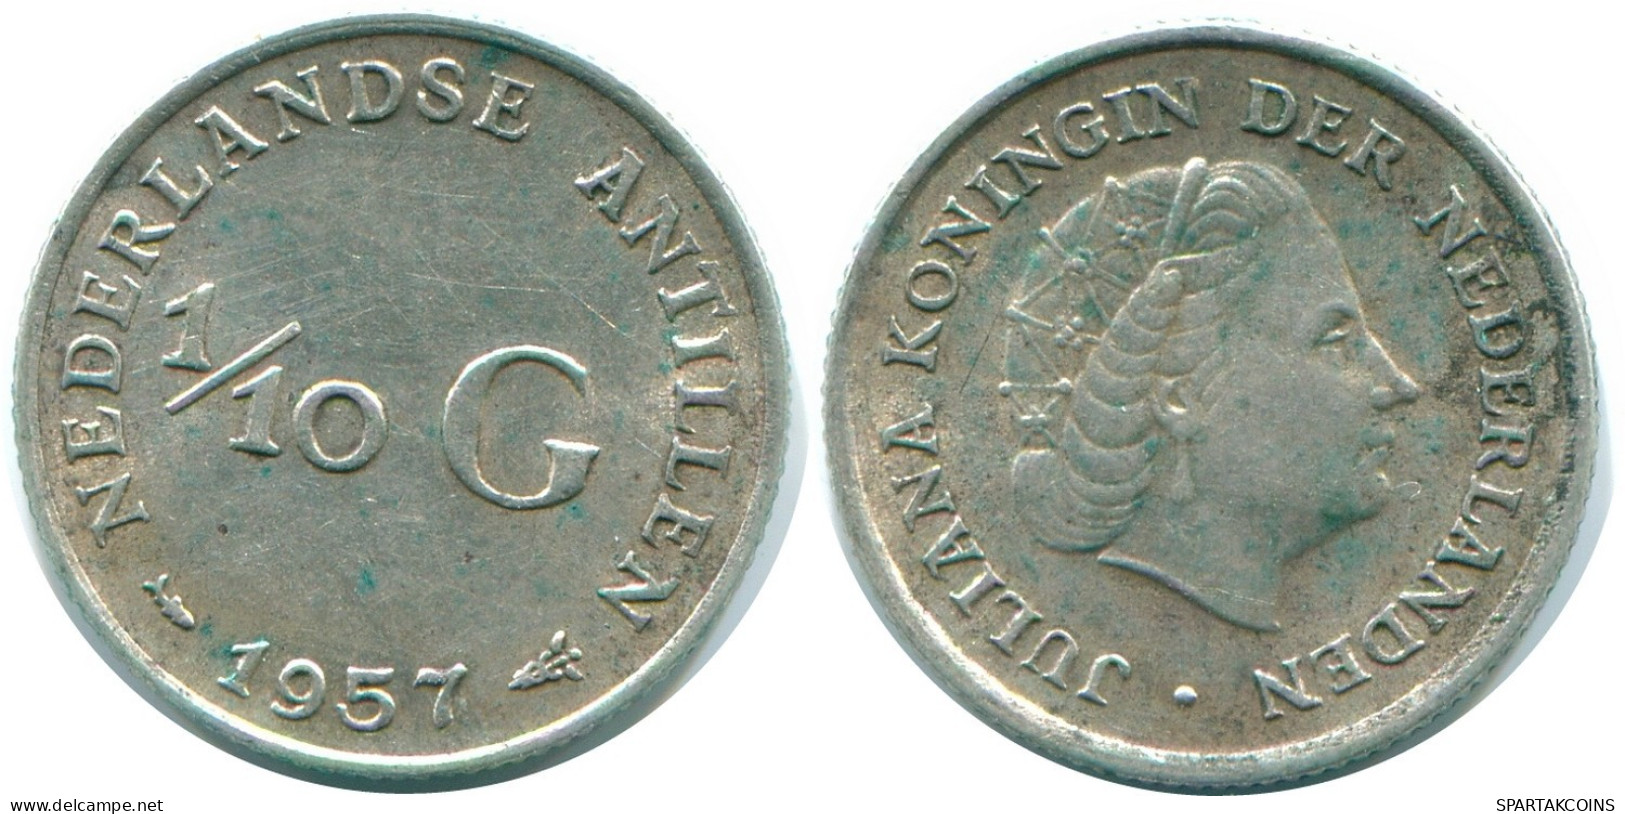 1/10 GULDEN 1957 NIEDERLÄNDISCHE ANTILLEN SILBER Koloniale Münze #NL12172.3.D.A - Antille Olandesi